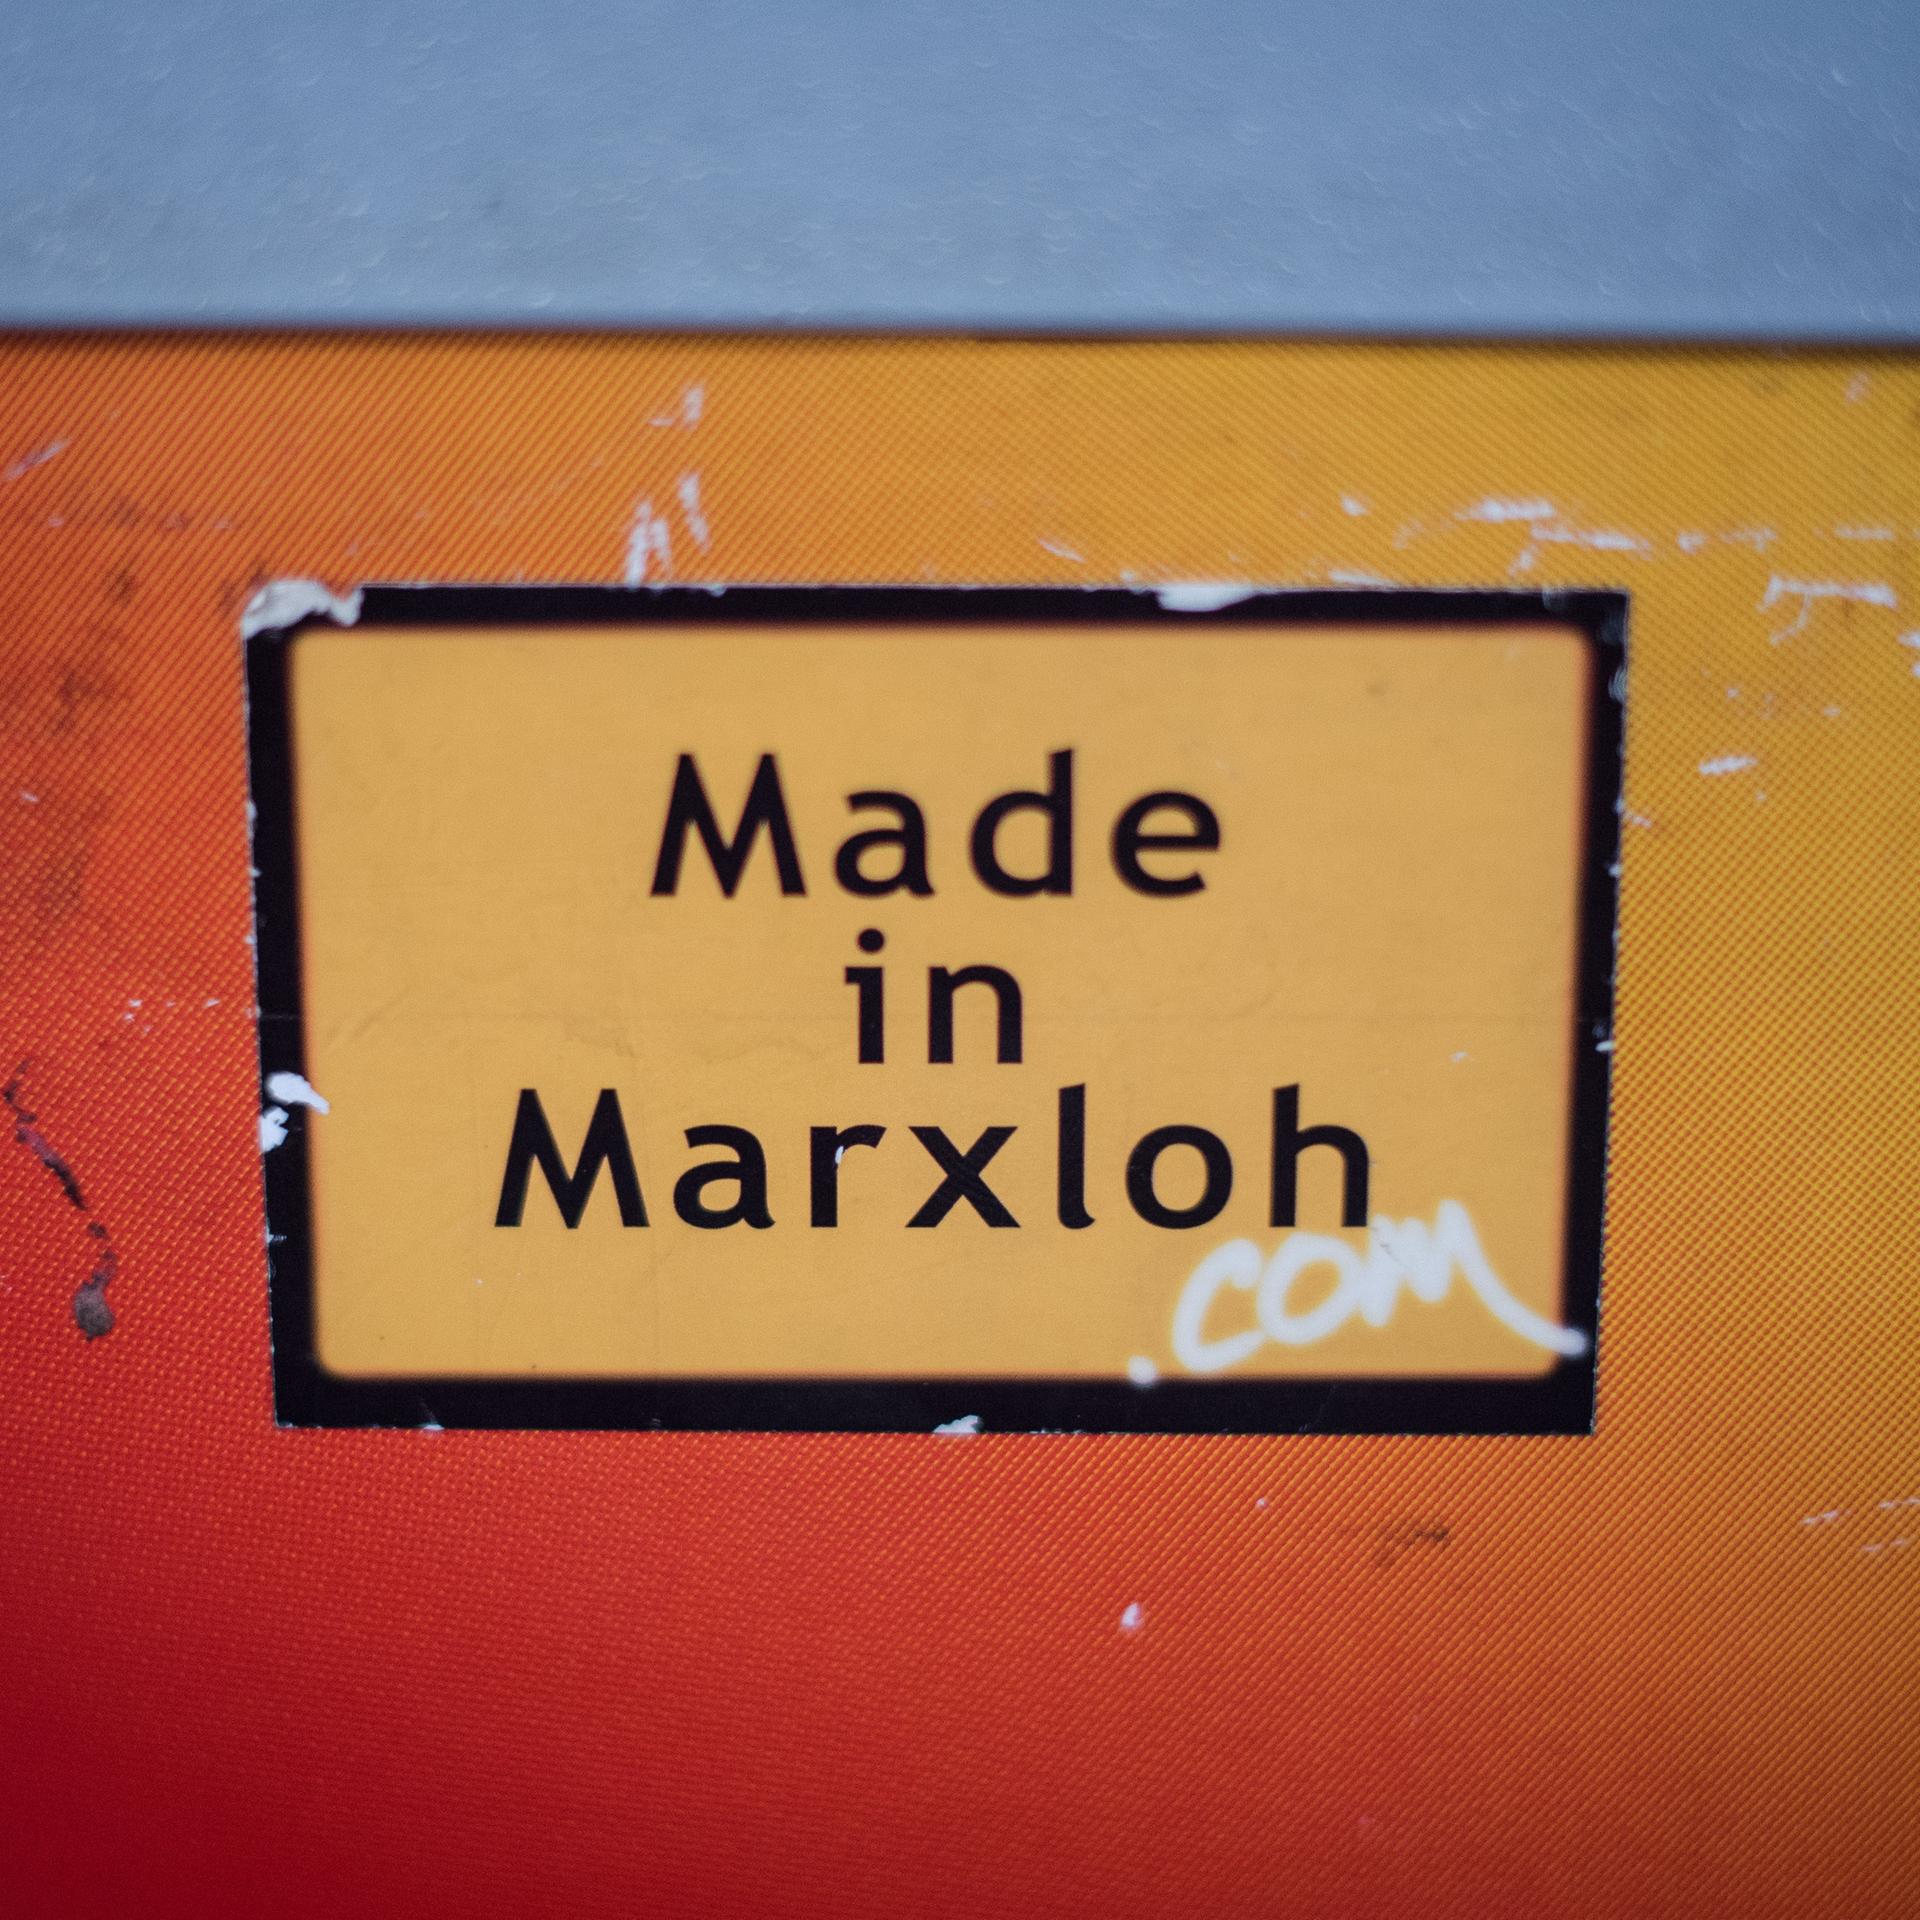 Ein Aufkleber "Made in Marxloh" klebt an einer orangfarbenen Wand.